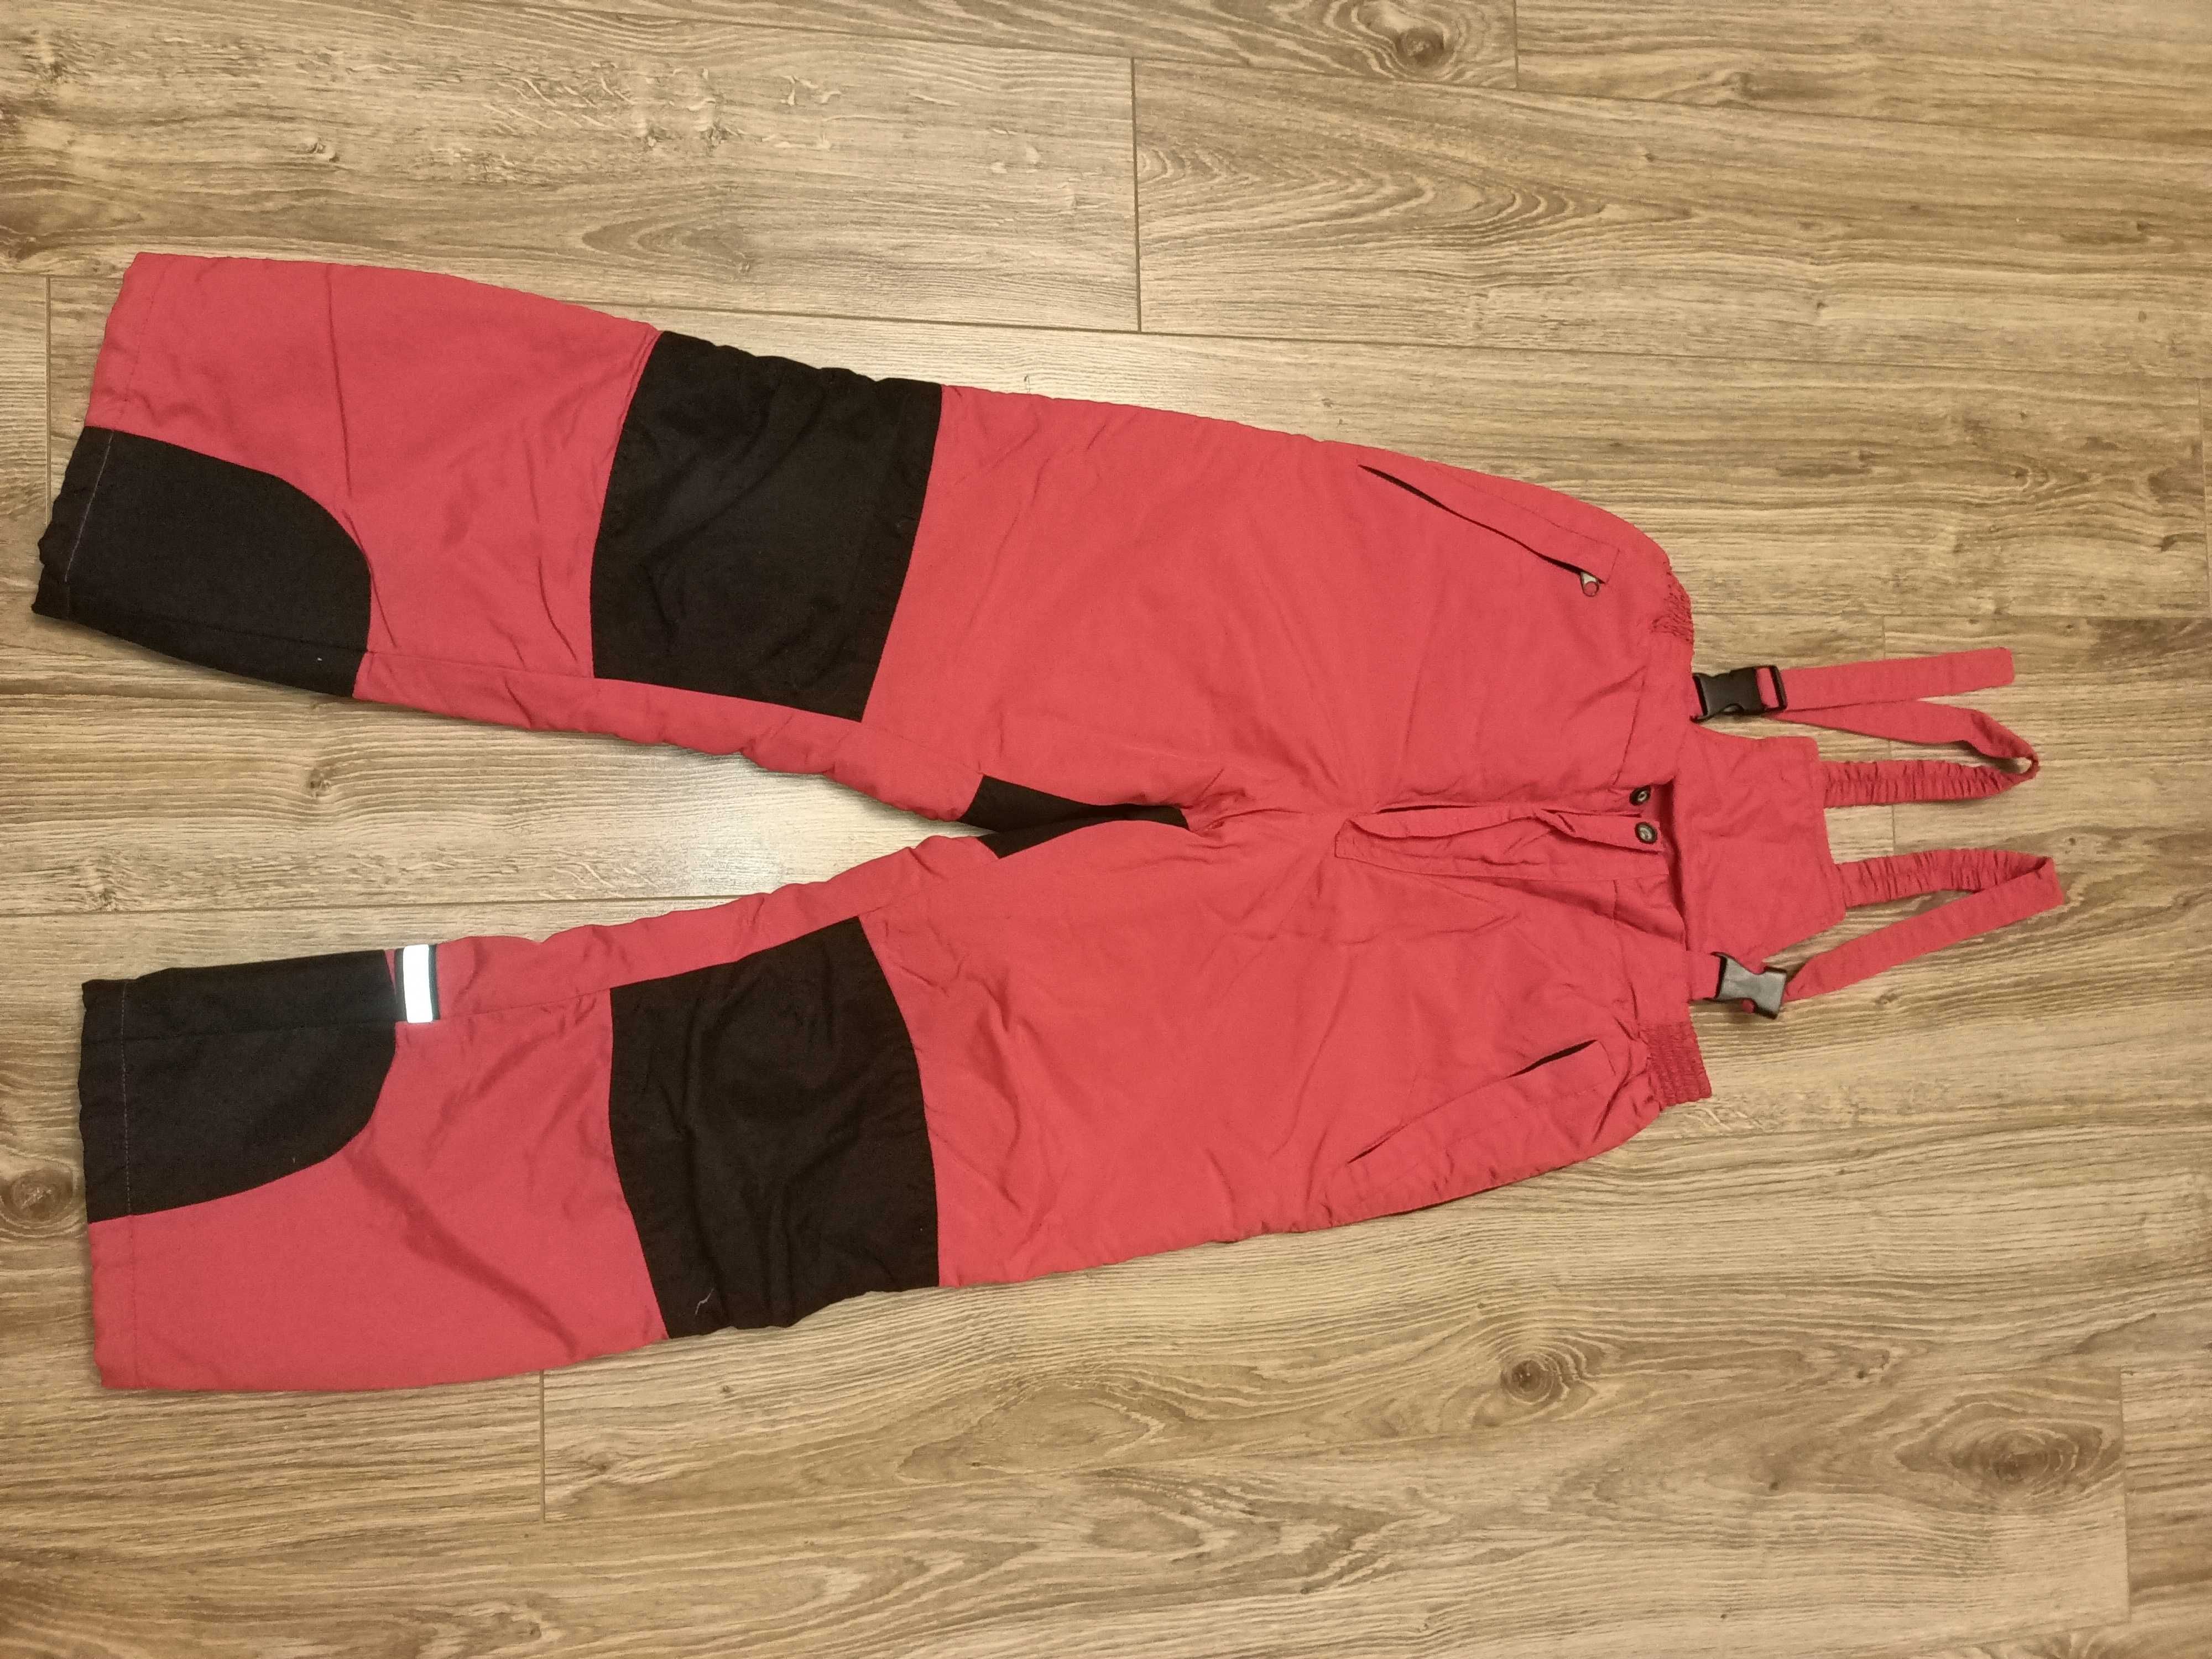 Spodnie zimowe narciarskie rozmiar 152cm